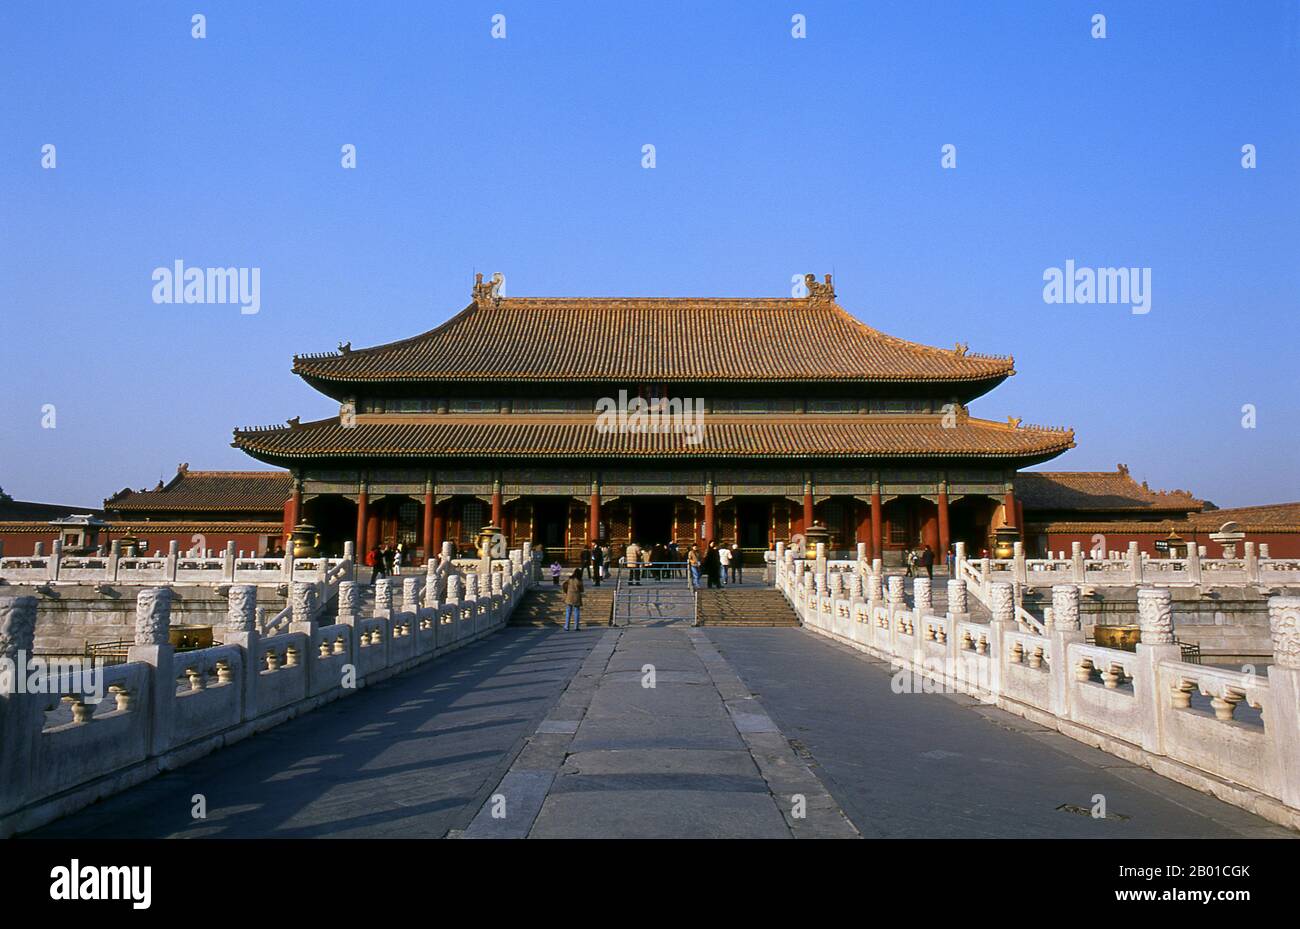 China: Der Palast der Himmlischen Reinheit (Qianqing Palast), die Verbotene Stadt (Zijin Cheng), Peking. Der Palast der Himmlischen Reinheit oder Qianqing Palast ist der größte der drei Hallen des inneren Gerichts der Verbotenen Stadt (die anderen beiden sind die Halle der Union und der Palast der irdischen Ruhe). Während der Qing-Dynastie diente der Palast als Audienzhalle des Imperators, wo er mit dem Großen Rat einen rat hielt. Die Verbotene Stadt, erbaut zwischen 1406 und 1420, diente 500 Jahre lang (bis zum Ende der Kaiserzeit 1911) als Sitz aller Macht in China, dem Thron des Sohnes des Heaves Stockfoto